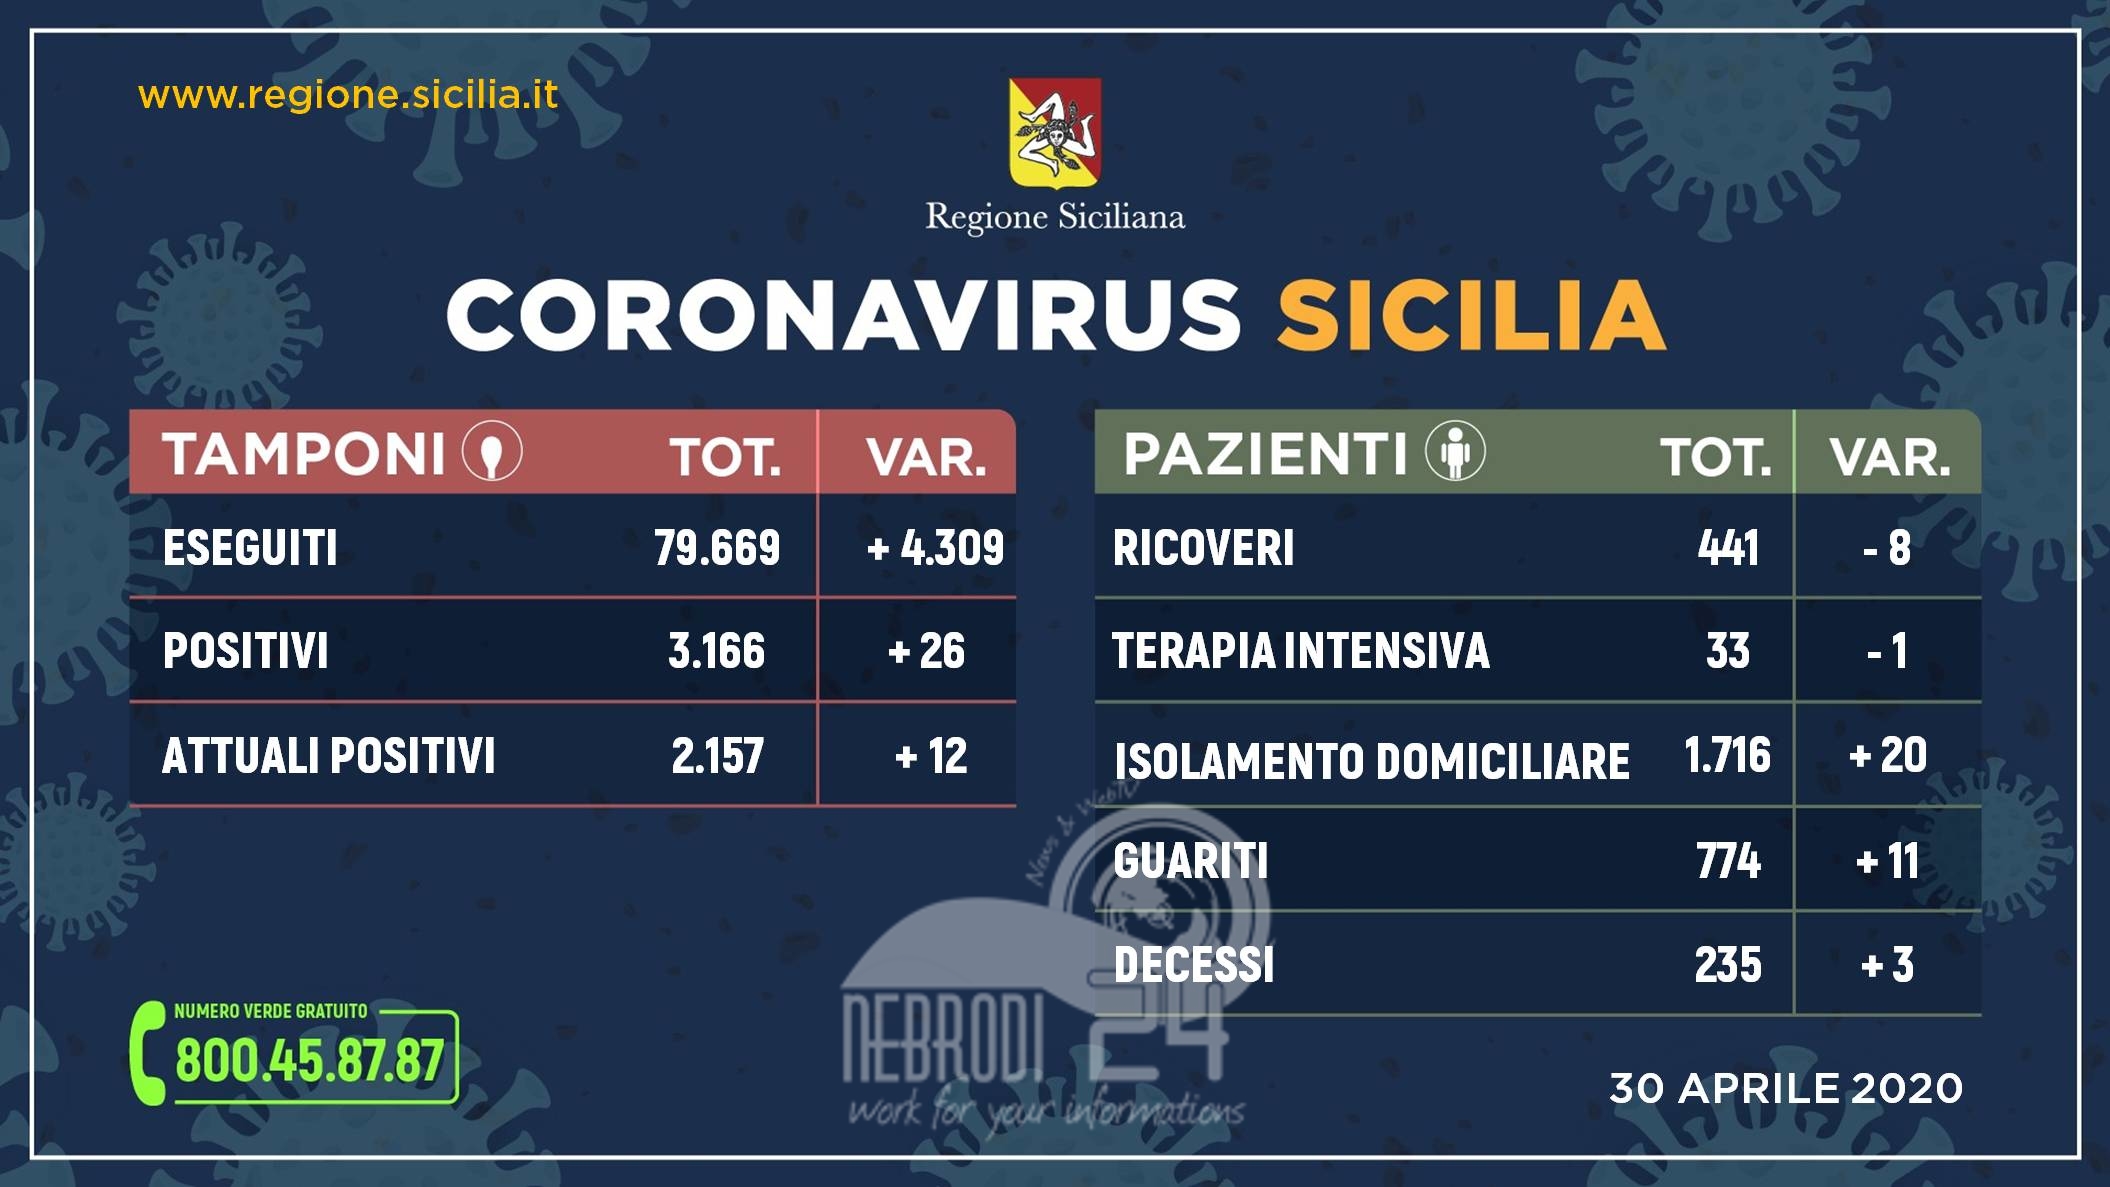 Coronavirus: in Sicilia oltre 4 mila tamponi, meno ricoveri e più guariti. Messina 5 casi, 2 guariti e 1 vittima